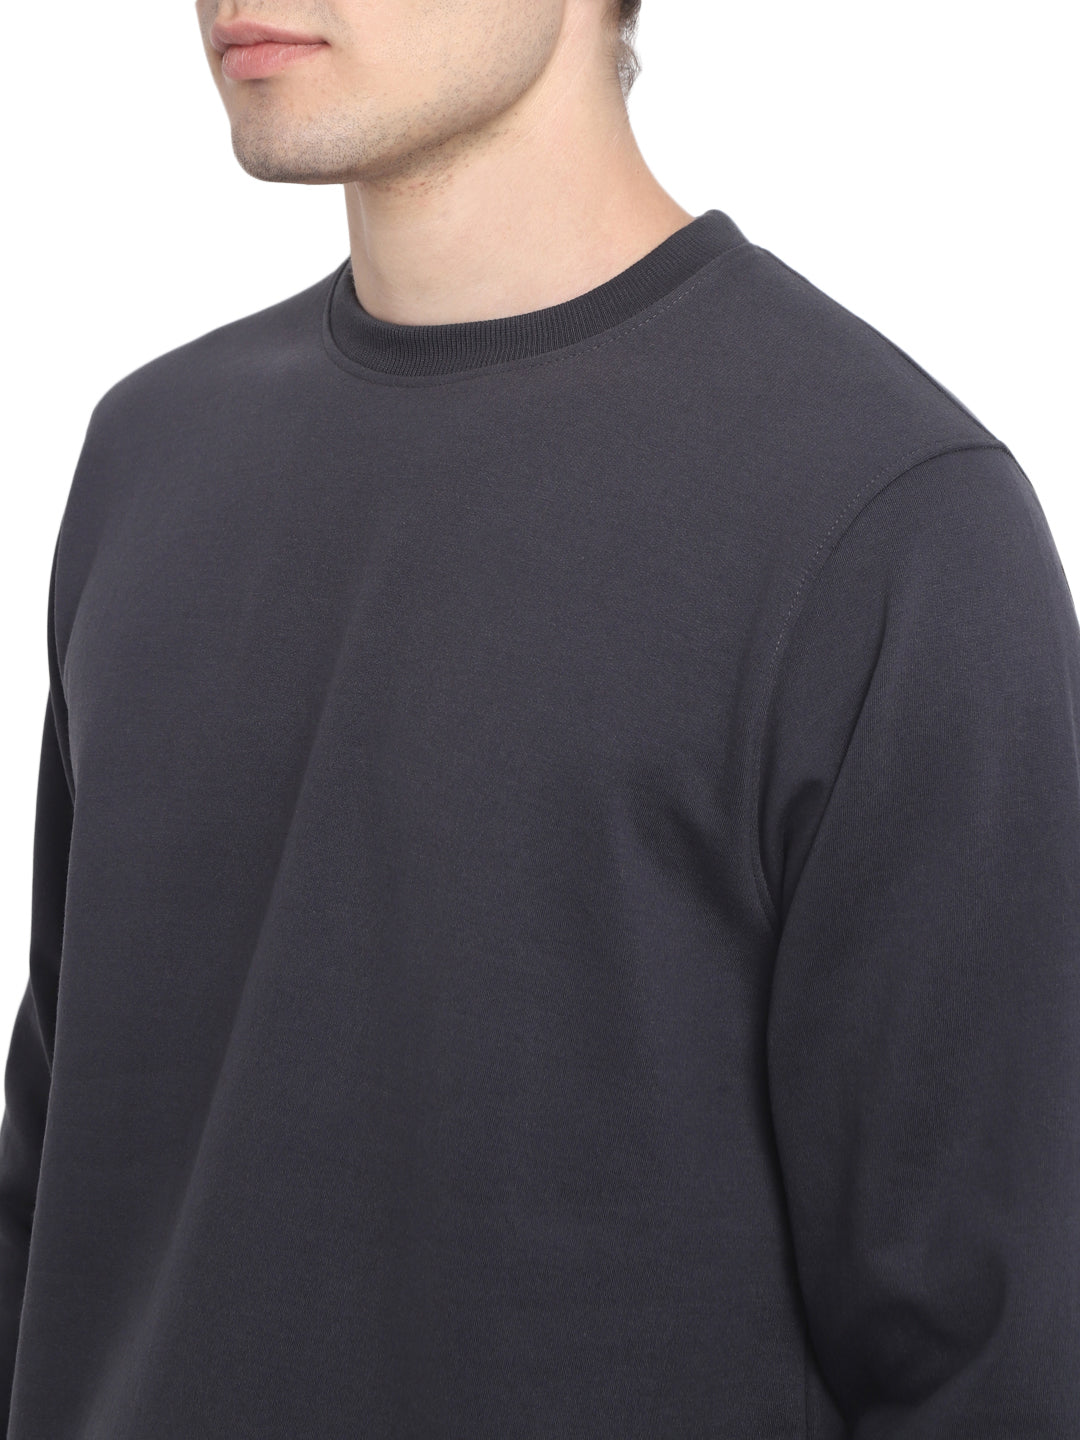 Round Neck Sweatshirt For Men - Carbon